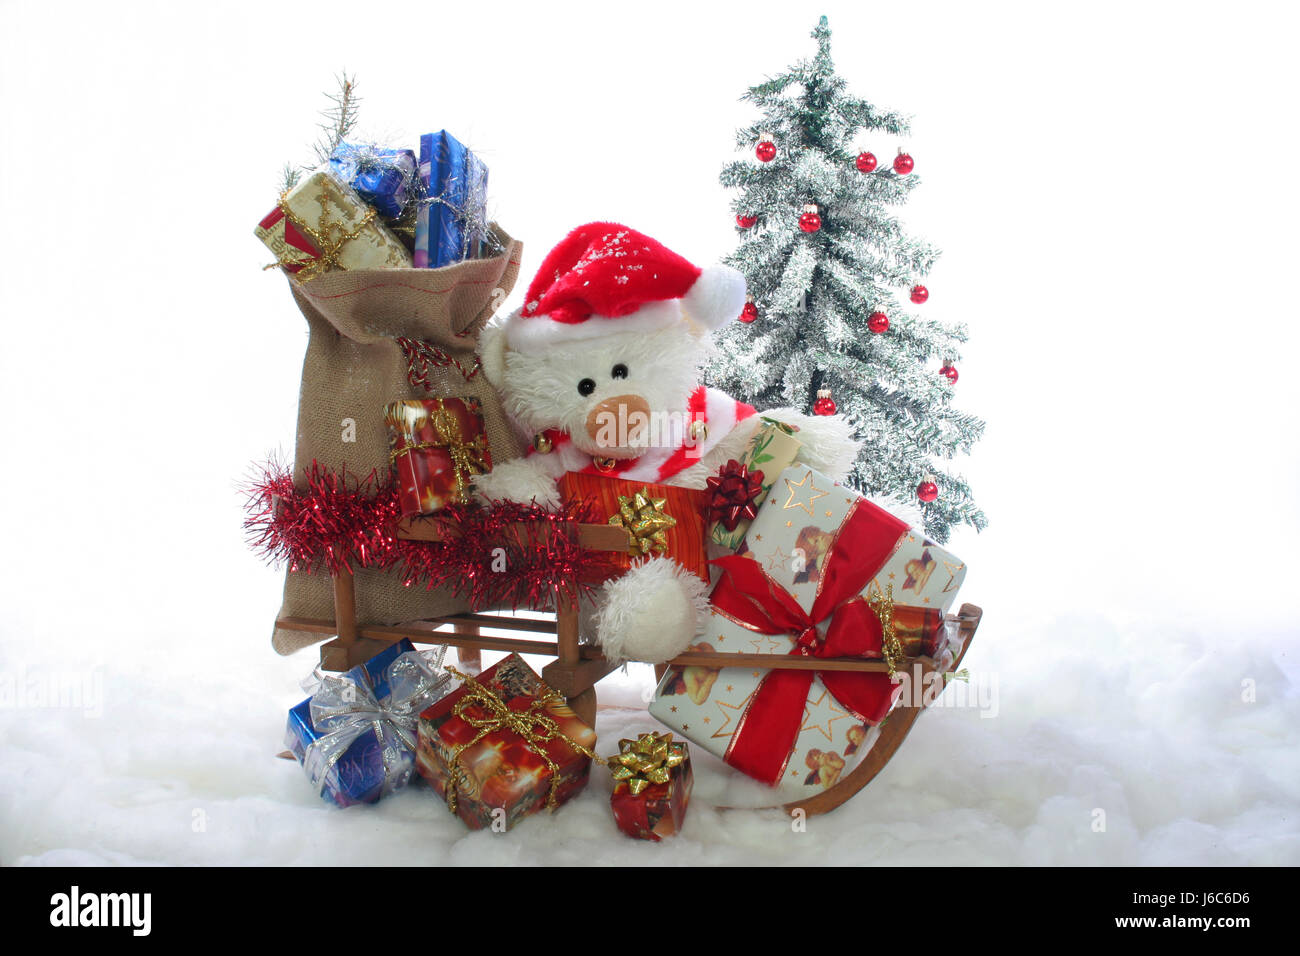 Weihnachtsmann Weihnachten Geschenke weihnachtsbaum schnee schlitten avvento Foto Stock